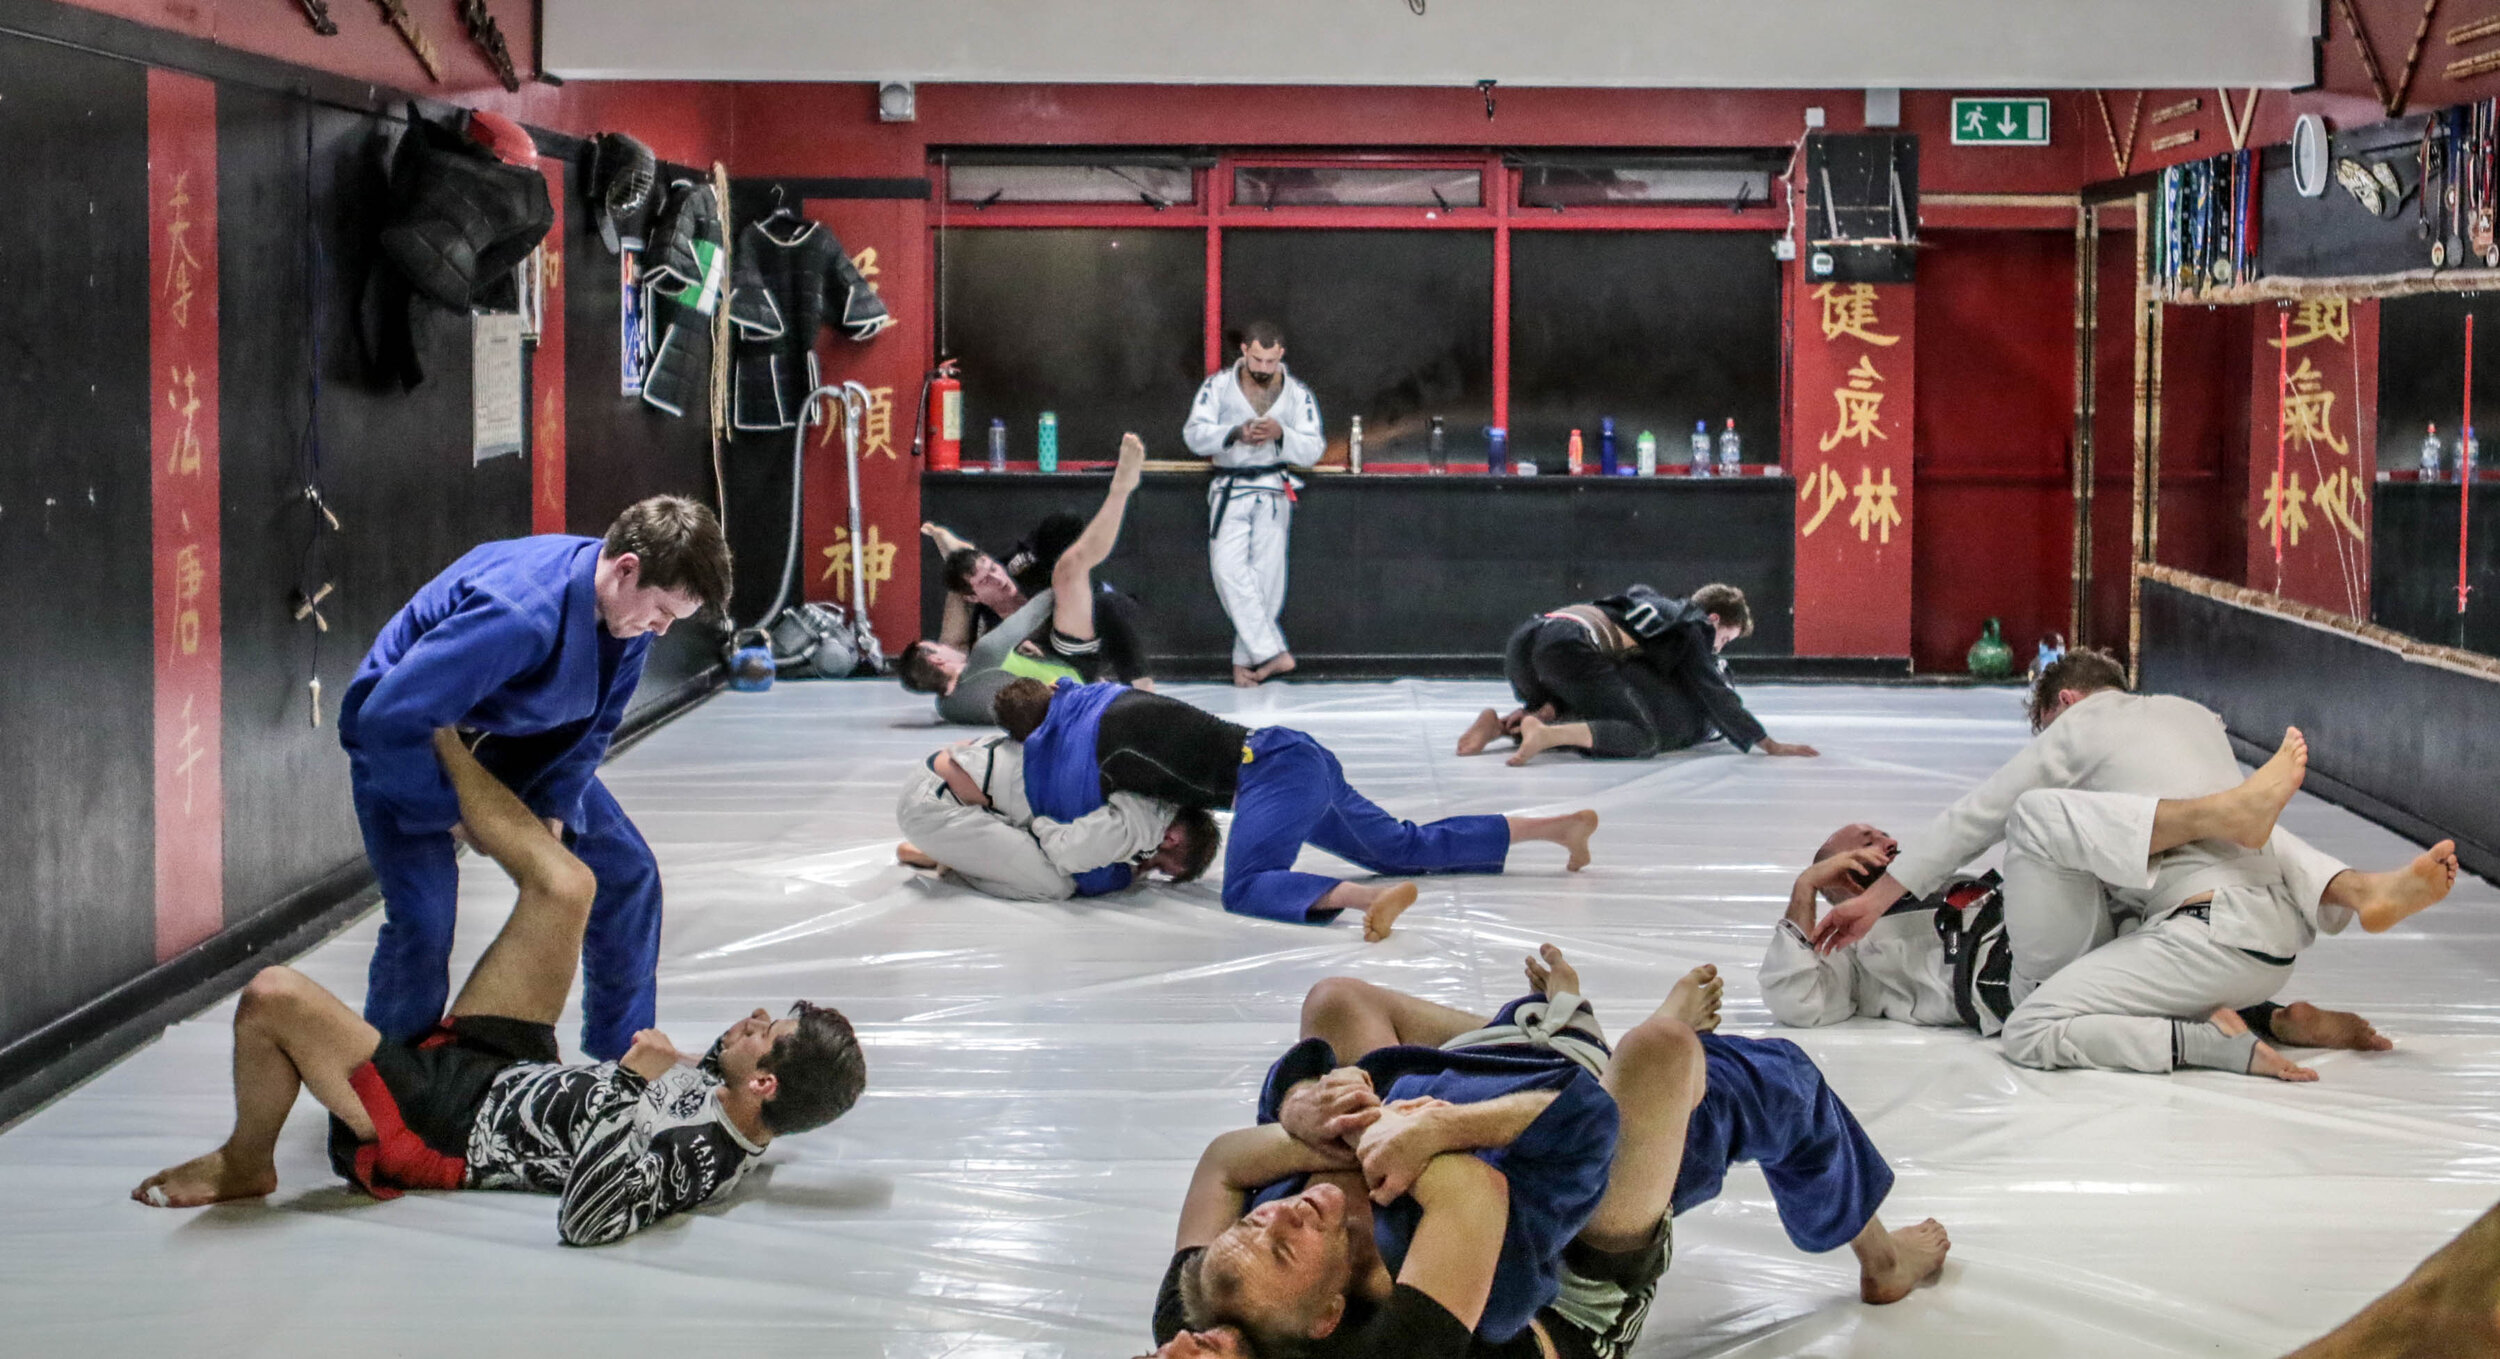 Brazilian Jiu Jitsu class in progress